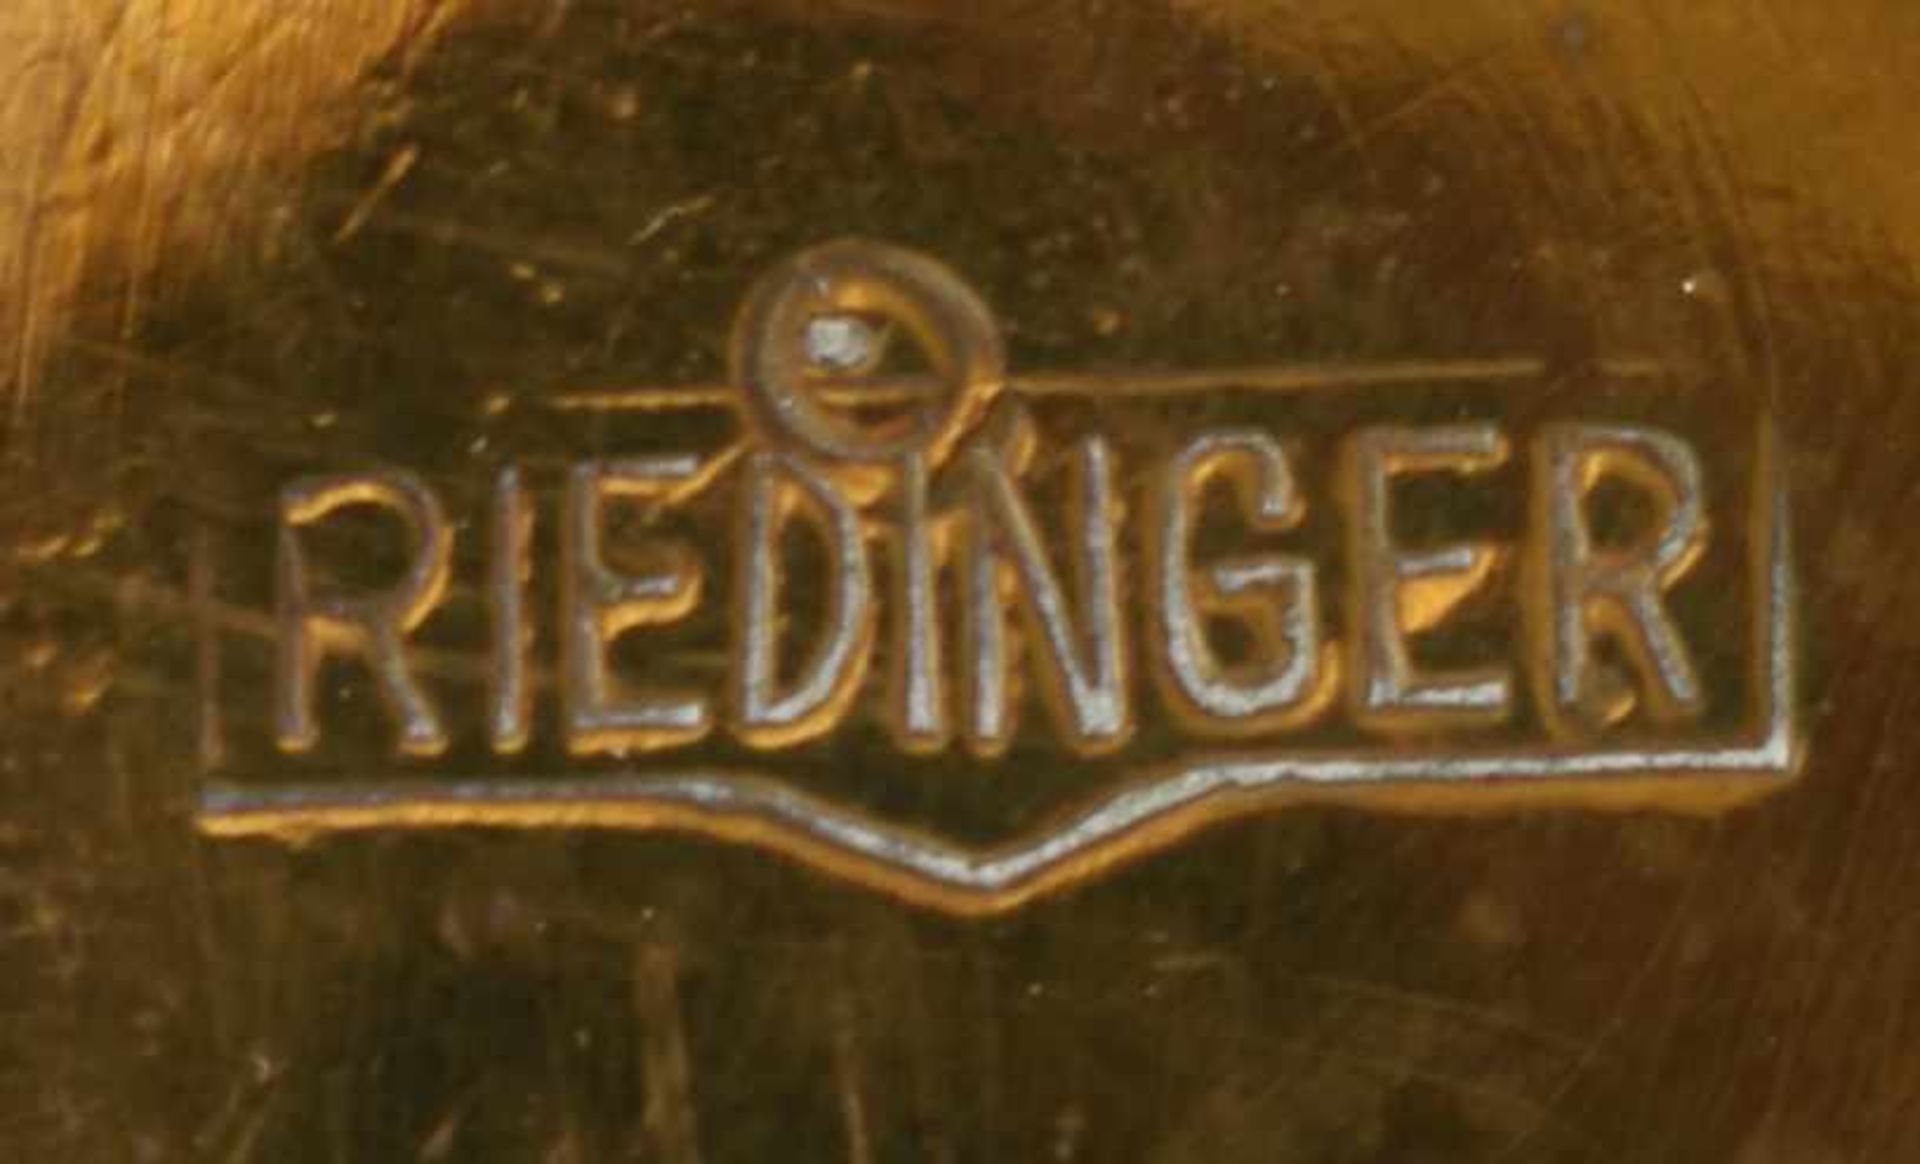 Keksdose gemarkt: Riedinger, Messing, innen verzinnt, auf 3 verzierten Füßen konischer Korpus, - Bild 3 aus 3